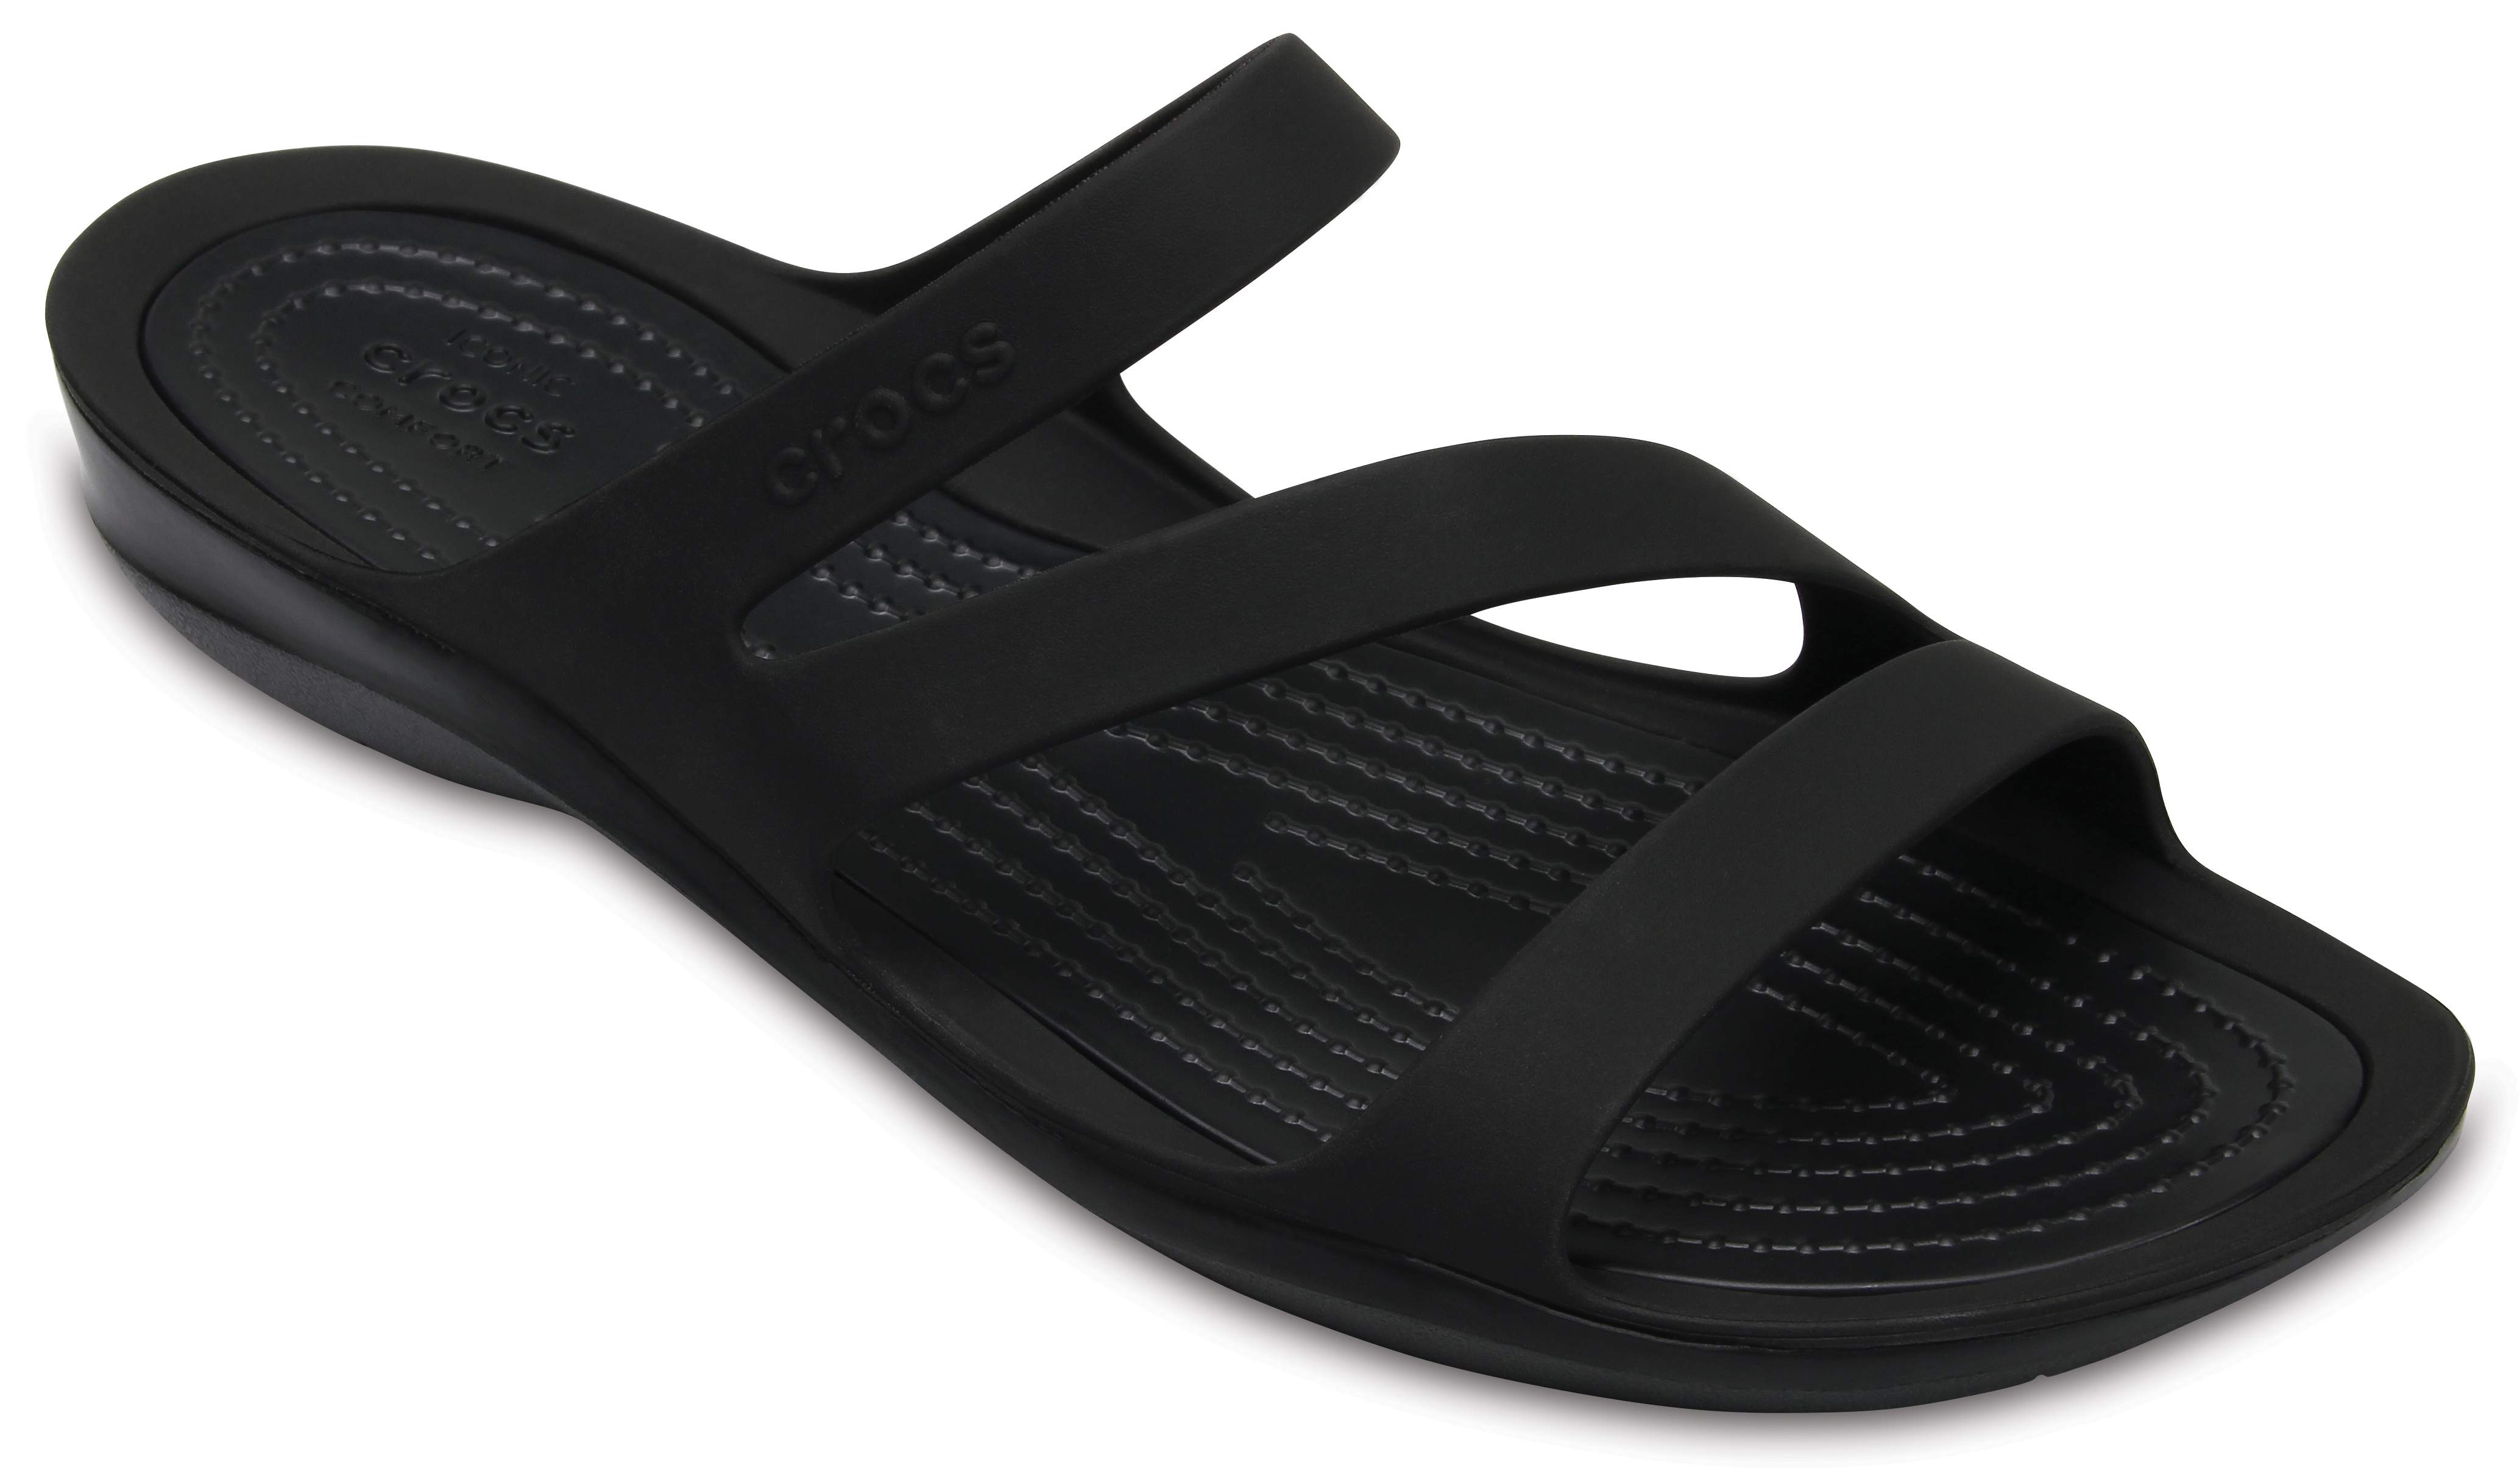 women's crocs slide sandals